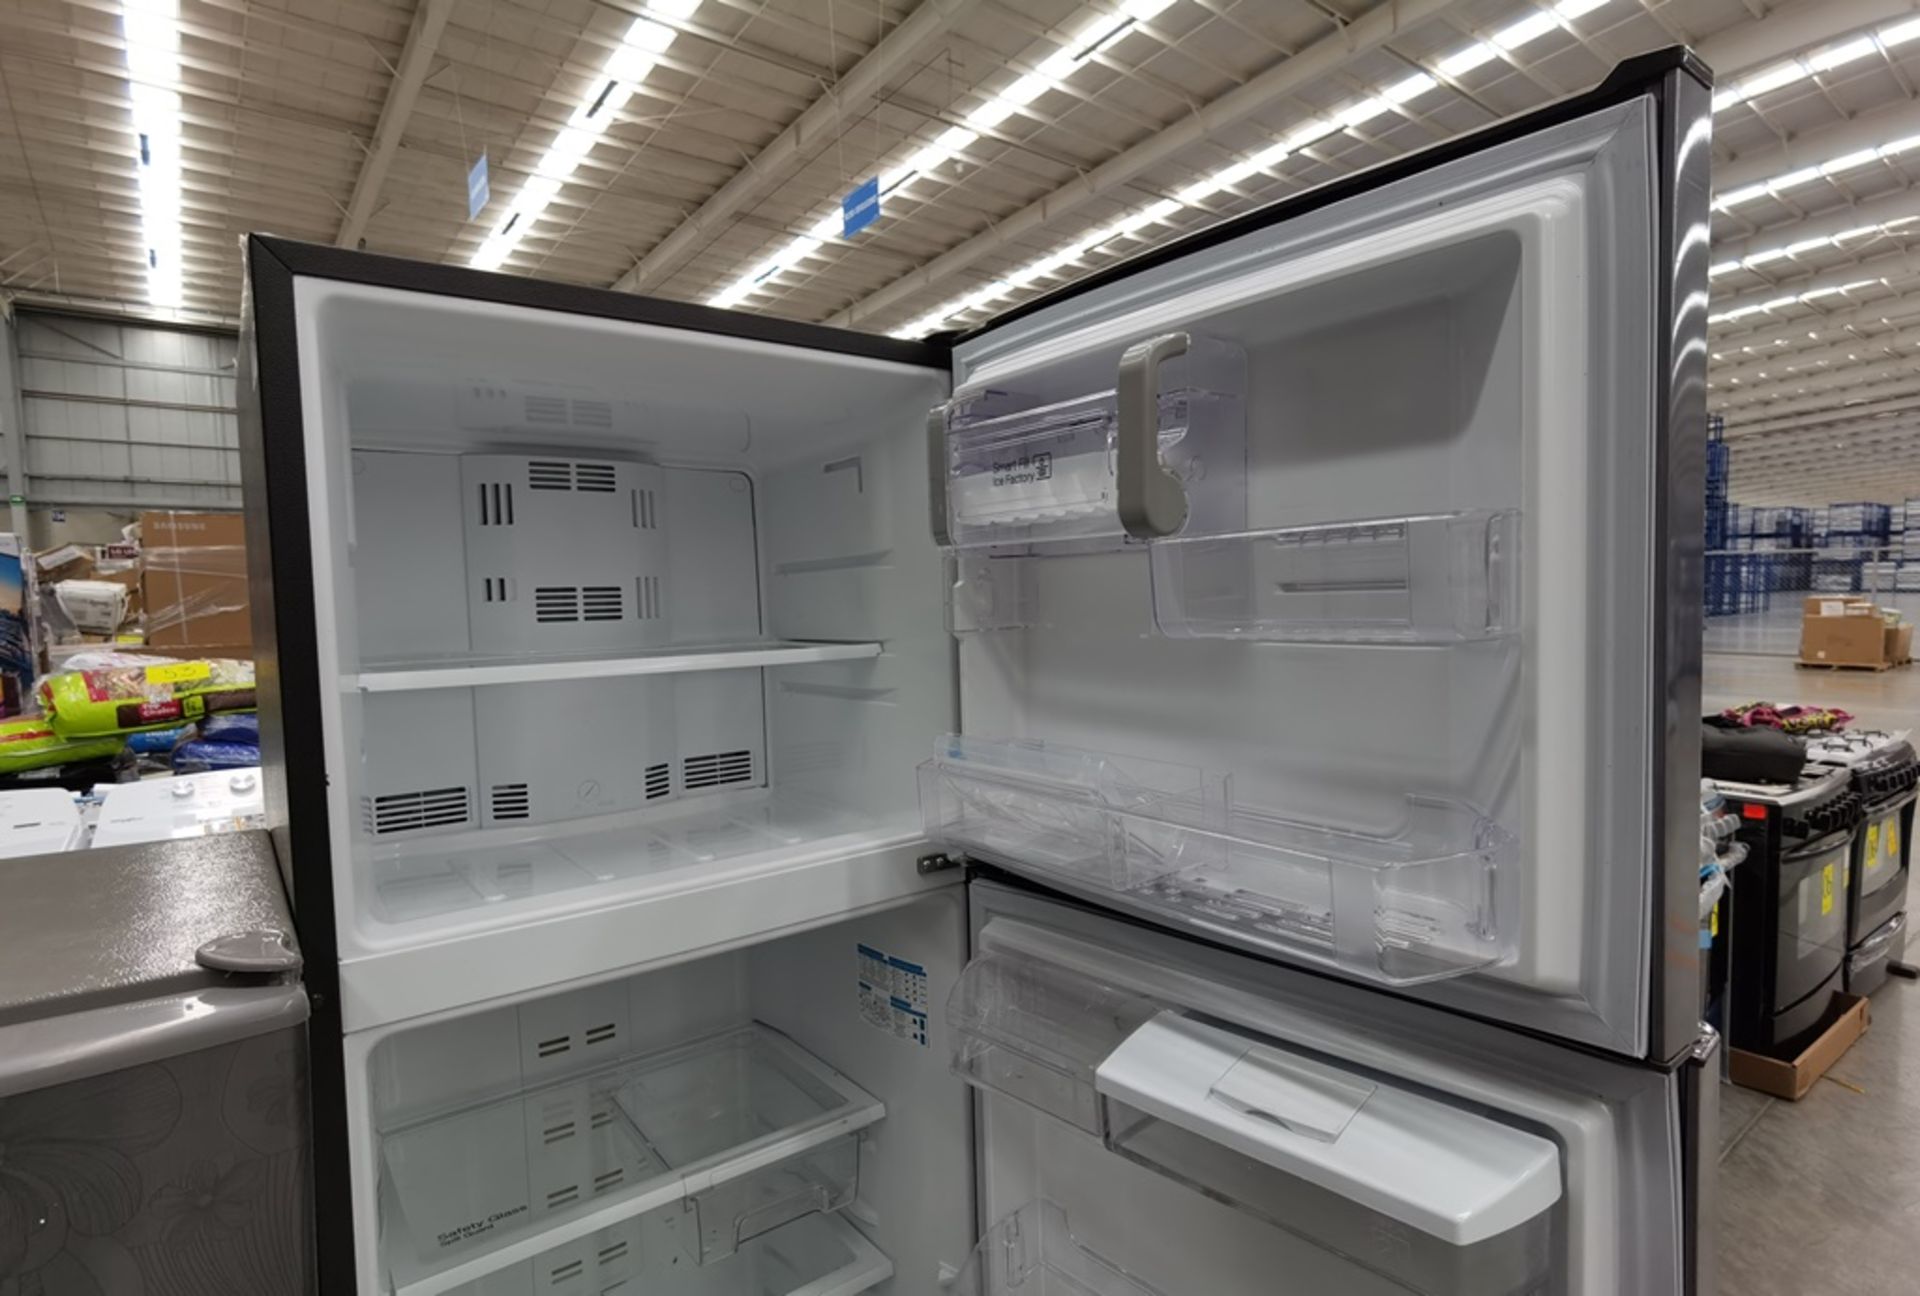 Lote de 2 refrigeradores conformado por: 1 Refrigerador con dispensador de agua Marca Mabe Modelo R - Image 8 of 13